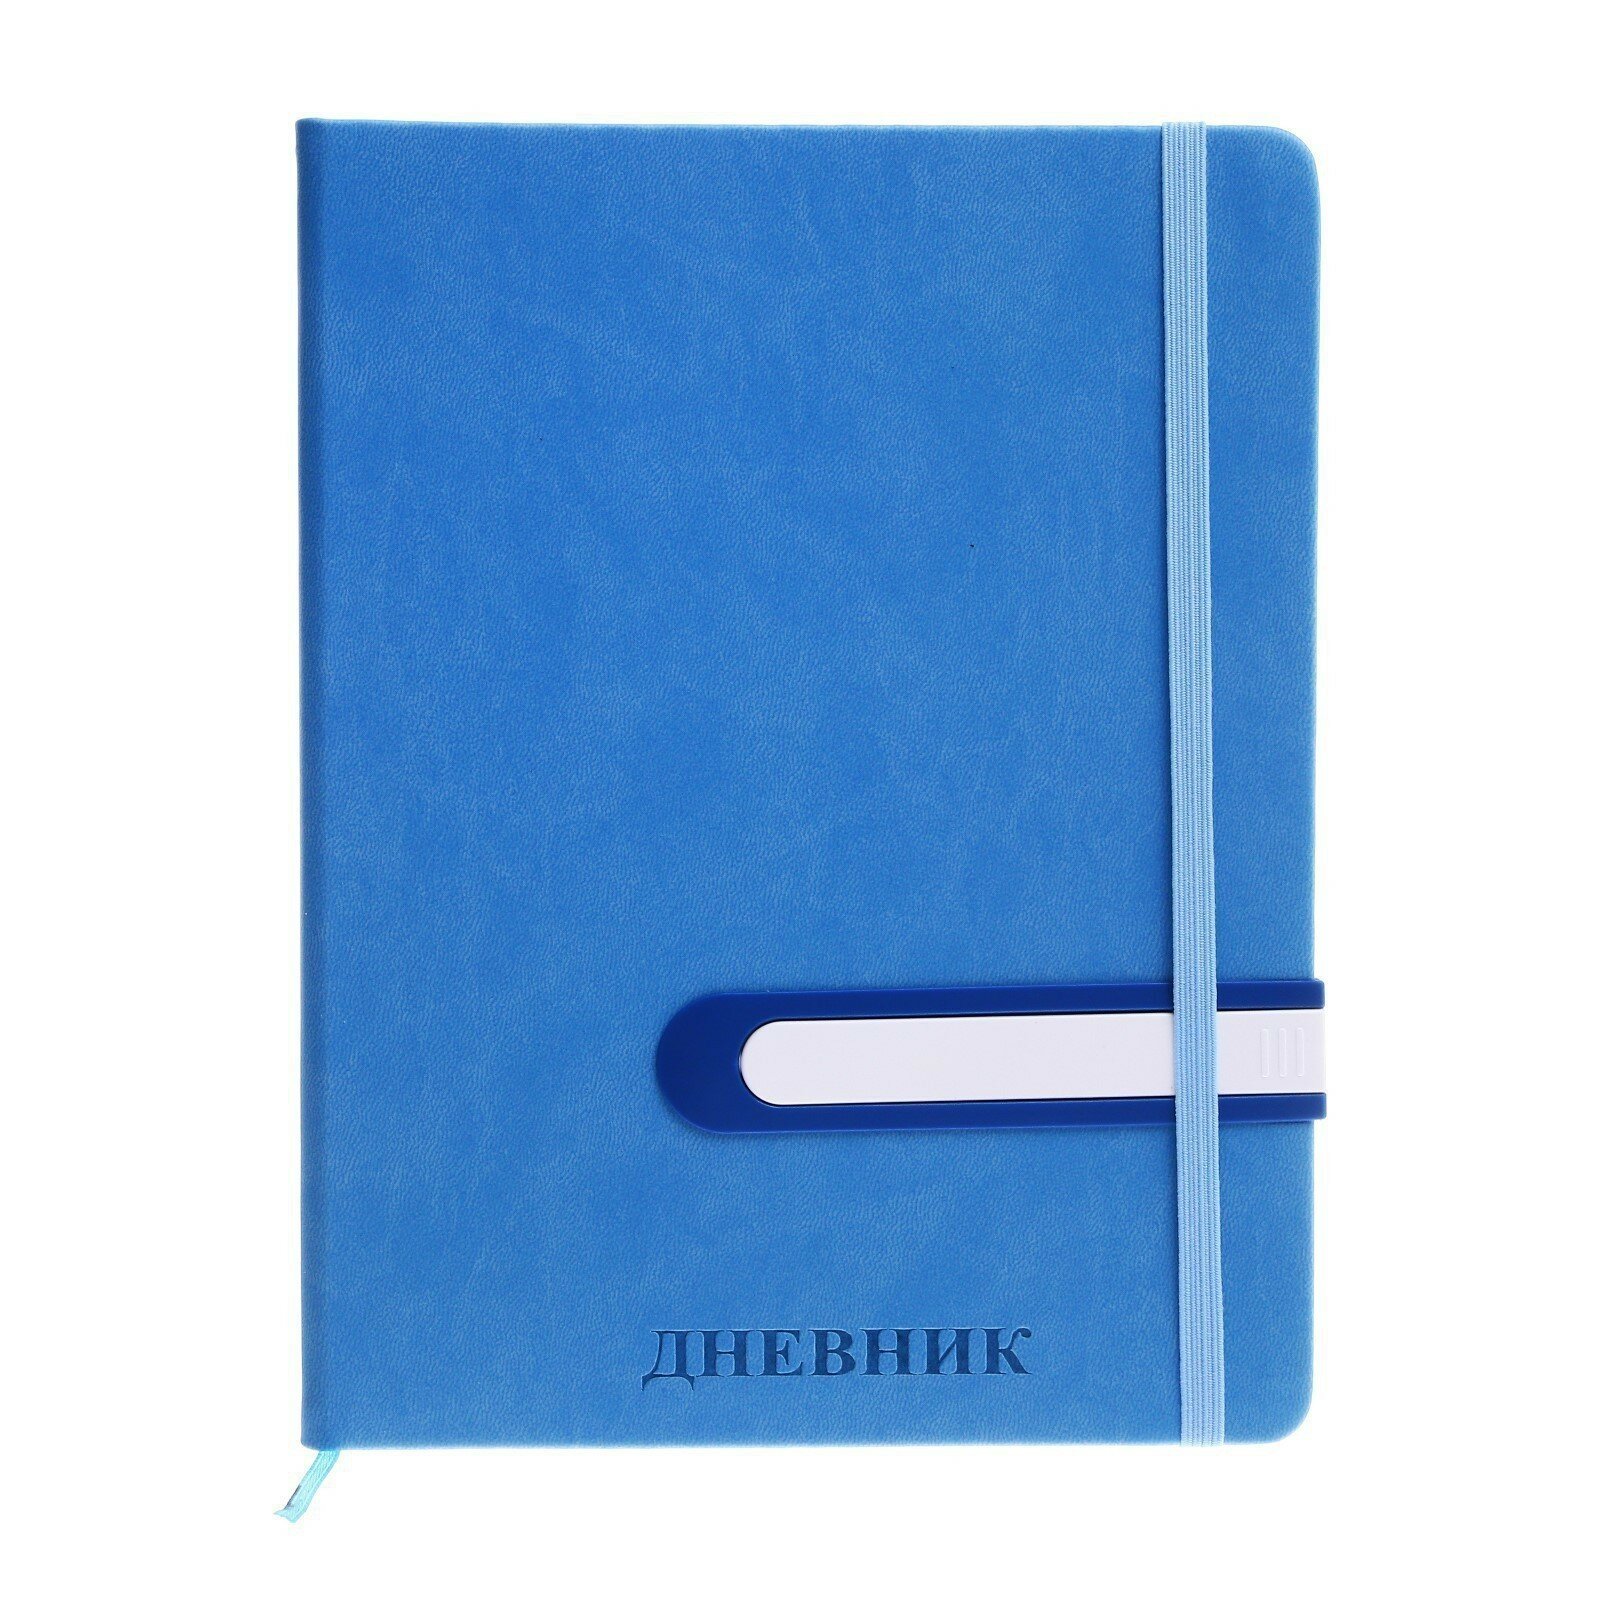 Дневник школьный, 5-11 класс, обложка ПВХ, с ручкой, на резинке "Яркий стиль", cиний (1шт.)